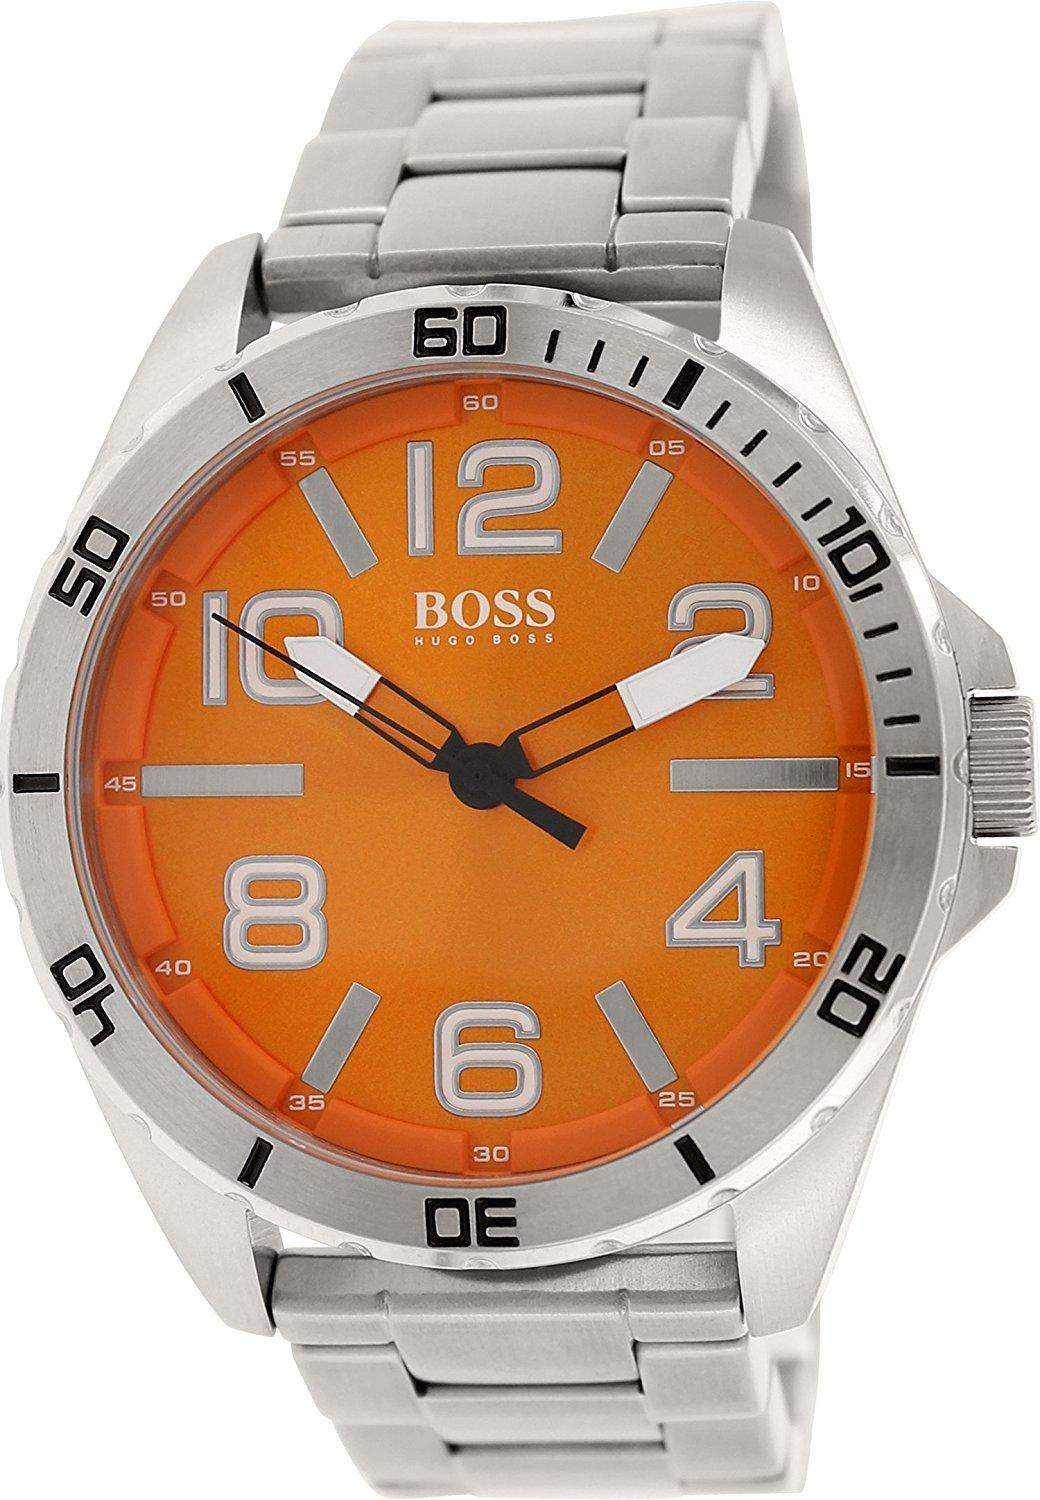 Hugo Boss Herren-Armbanduhr XL Analog Quarz Edelstahl 1512942